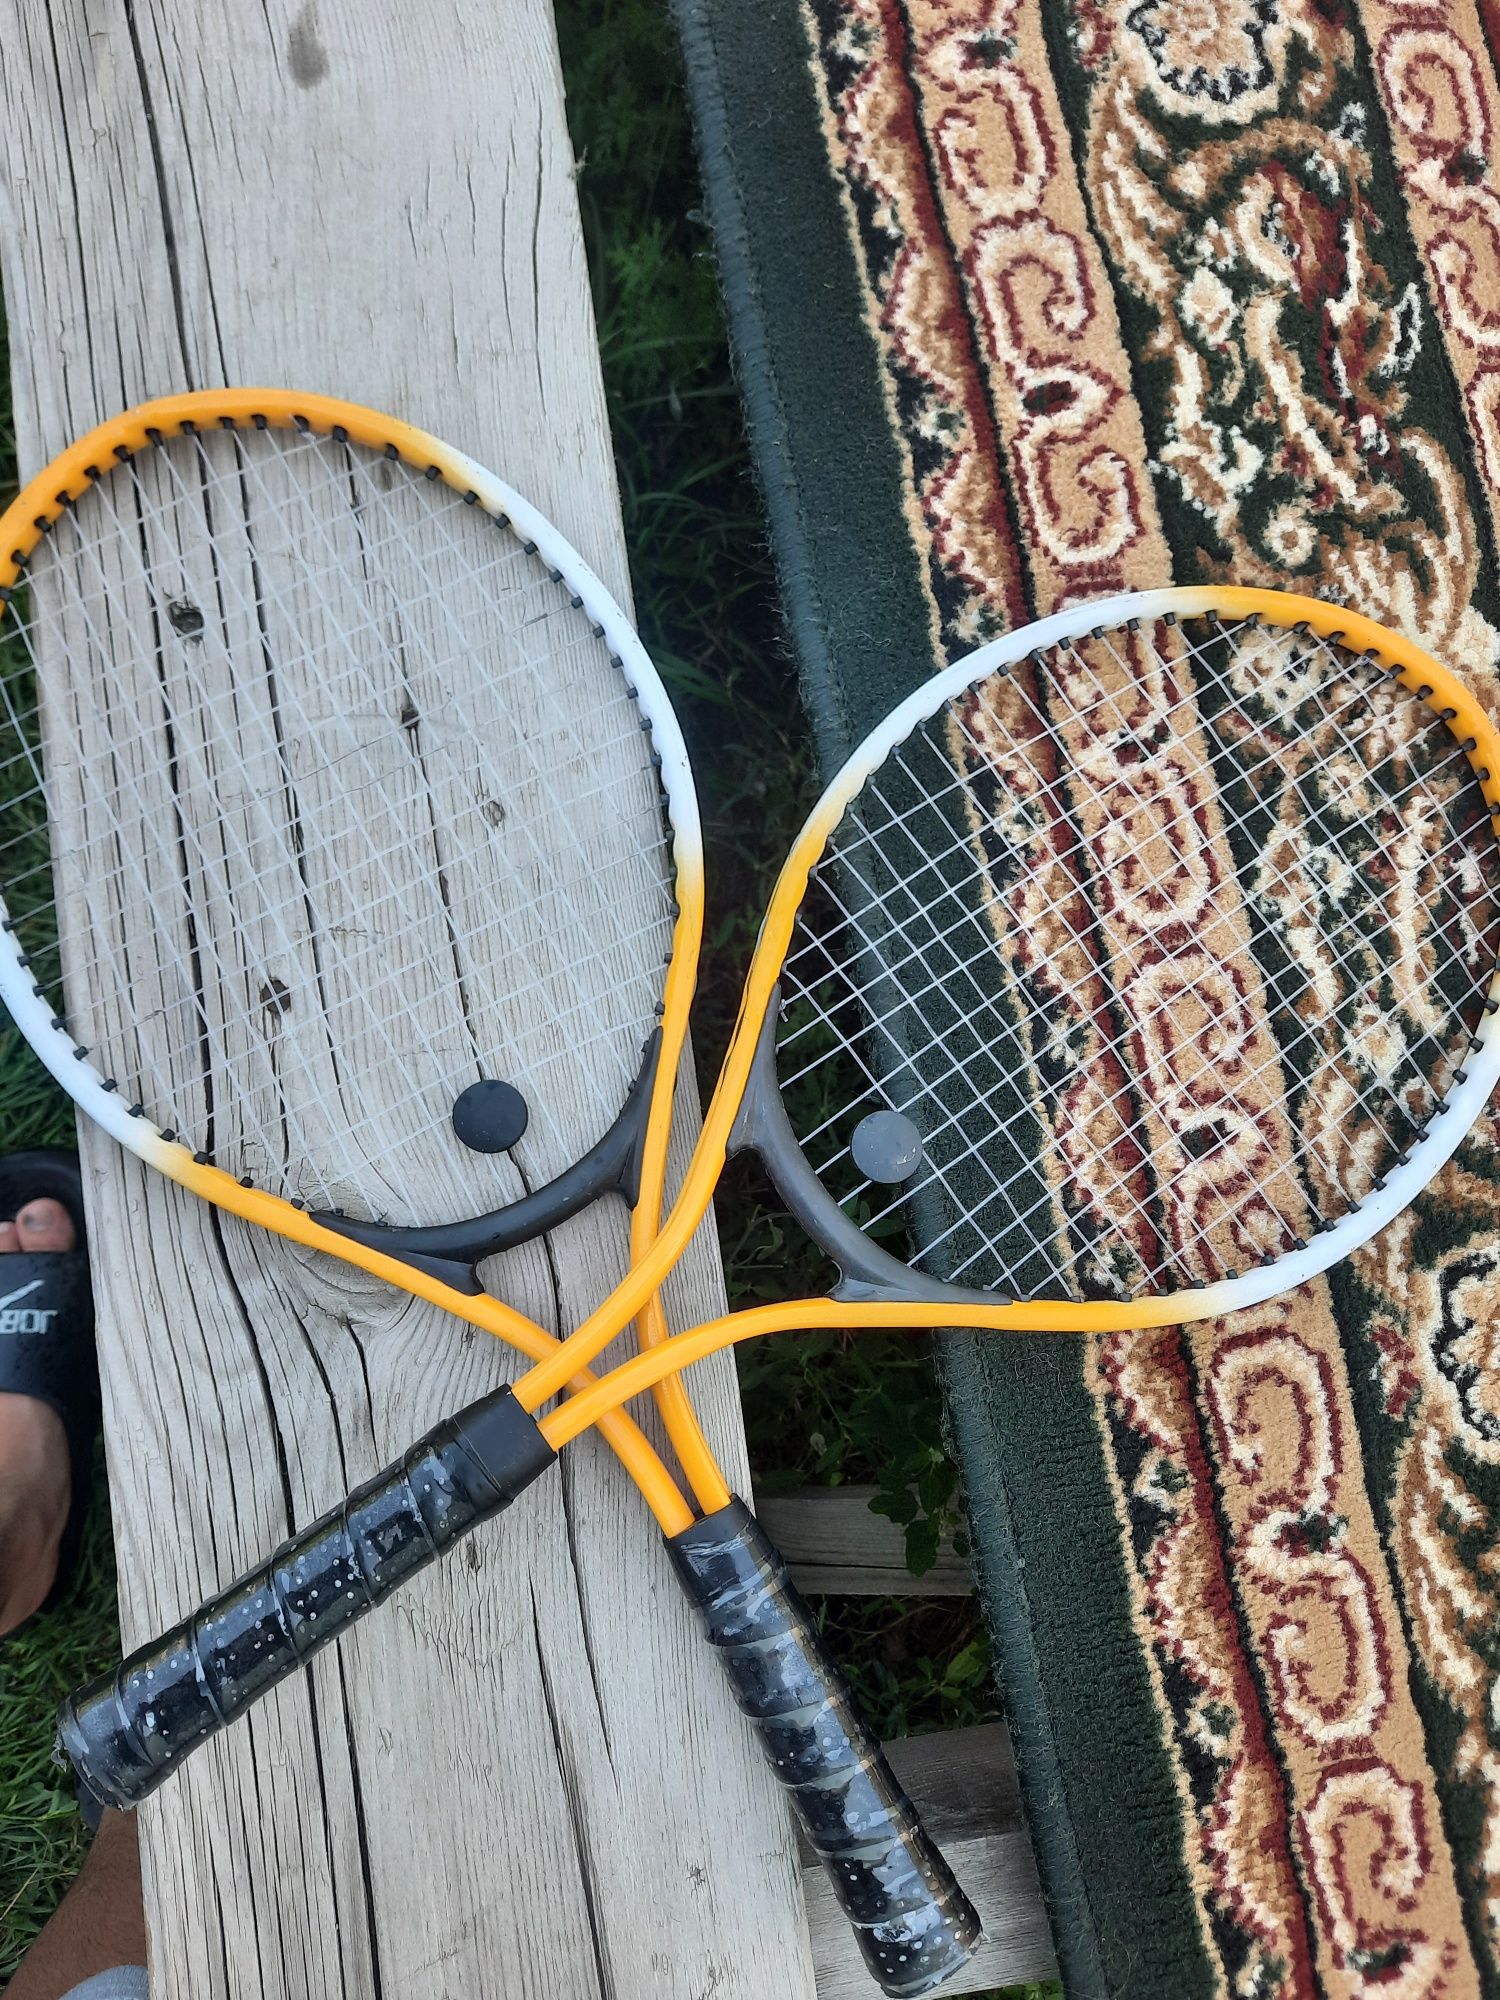 Ракетка для большого тенниса